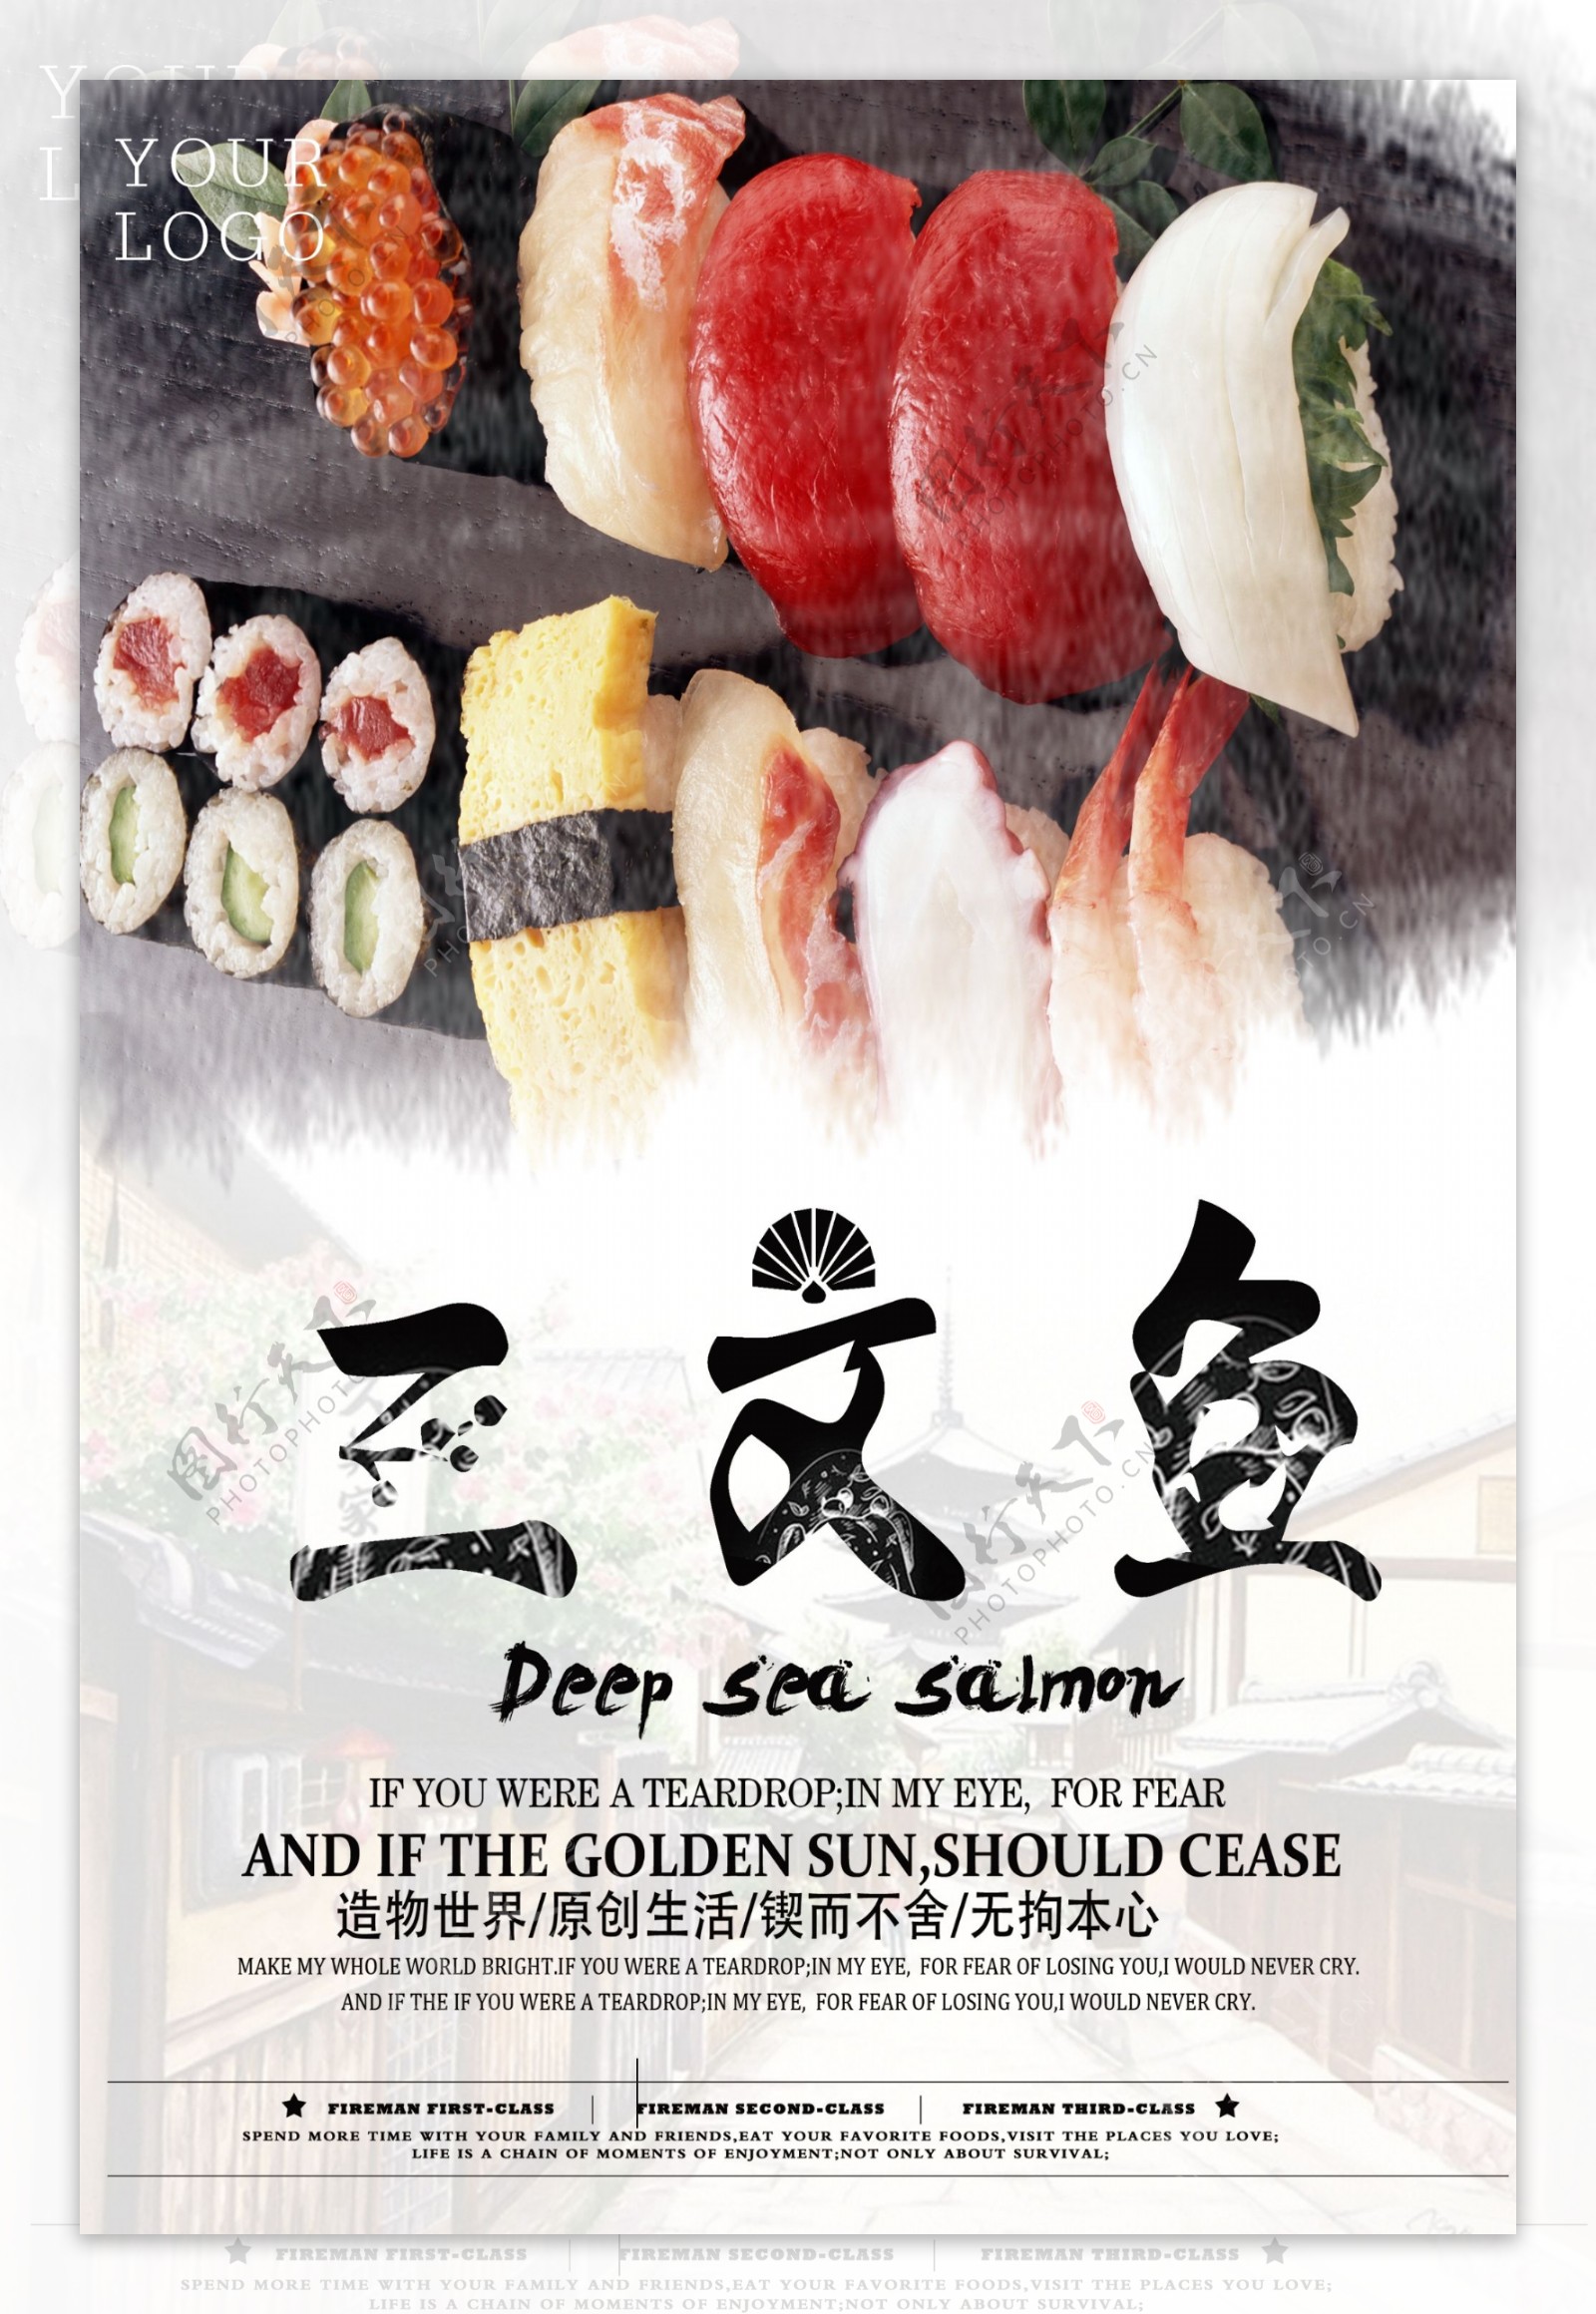 黑色背景水墨风日本传统美食寿司宣传海报